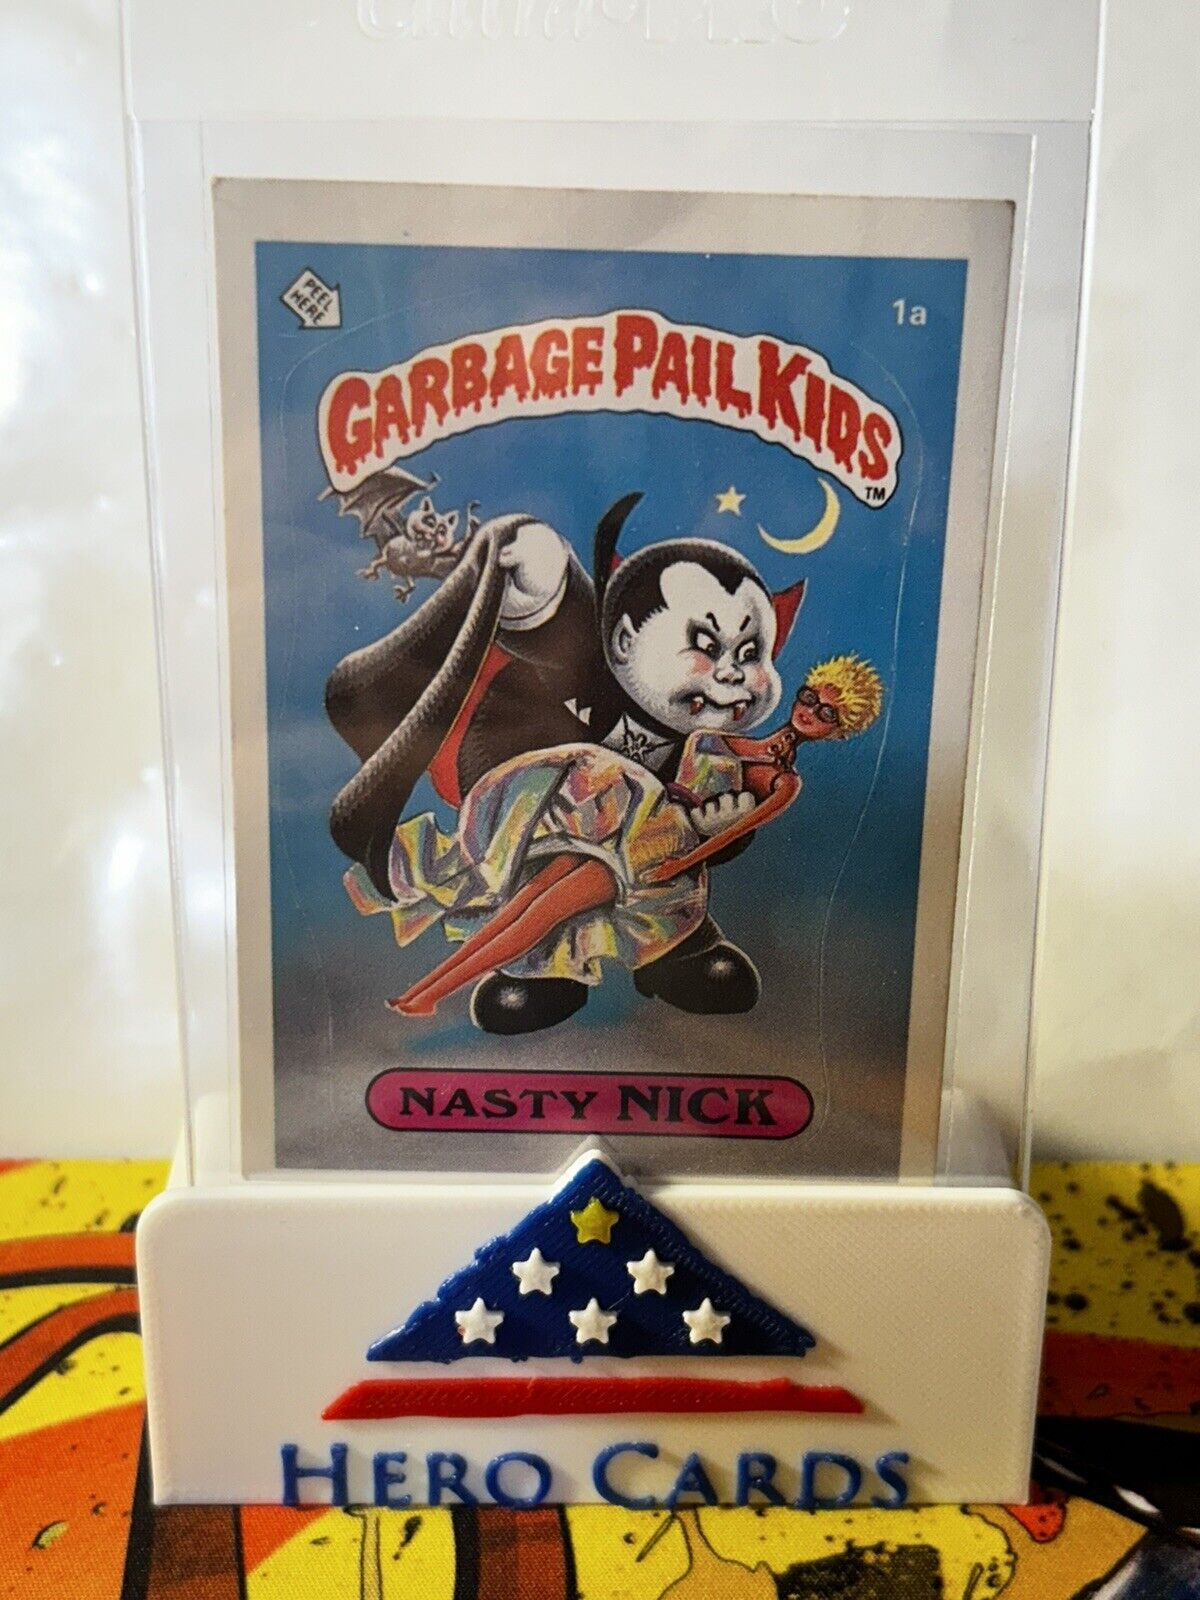 1st Series 1985 Topps Garbage Pail Kids OS1 NASTY NICK Card Sticker GPK